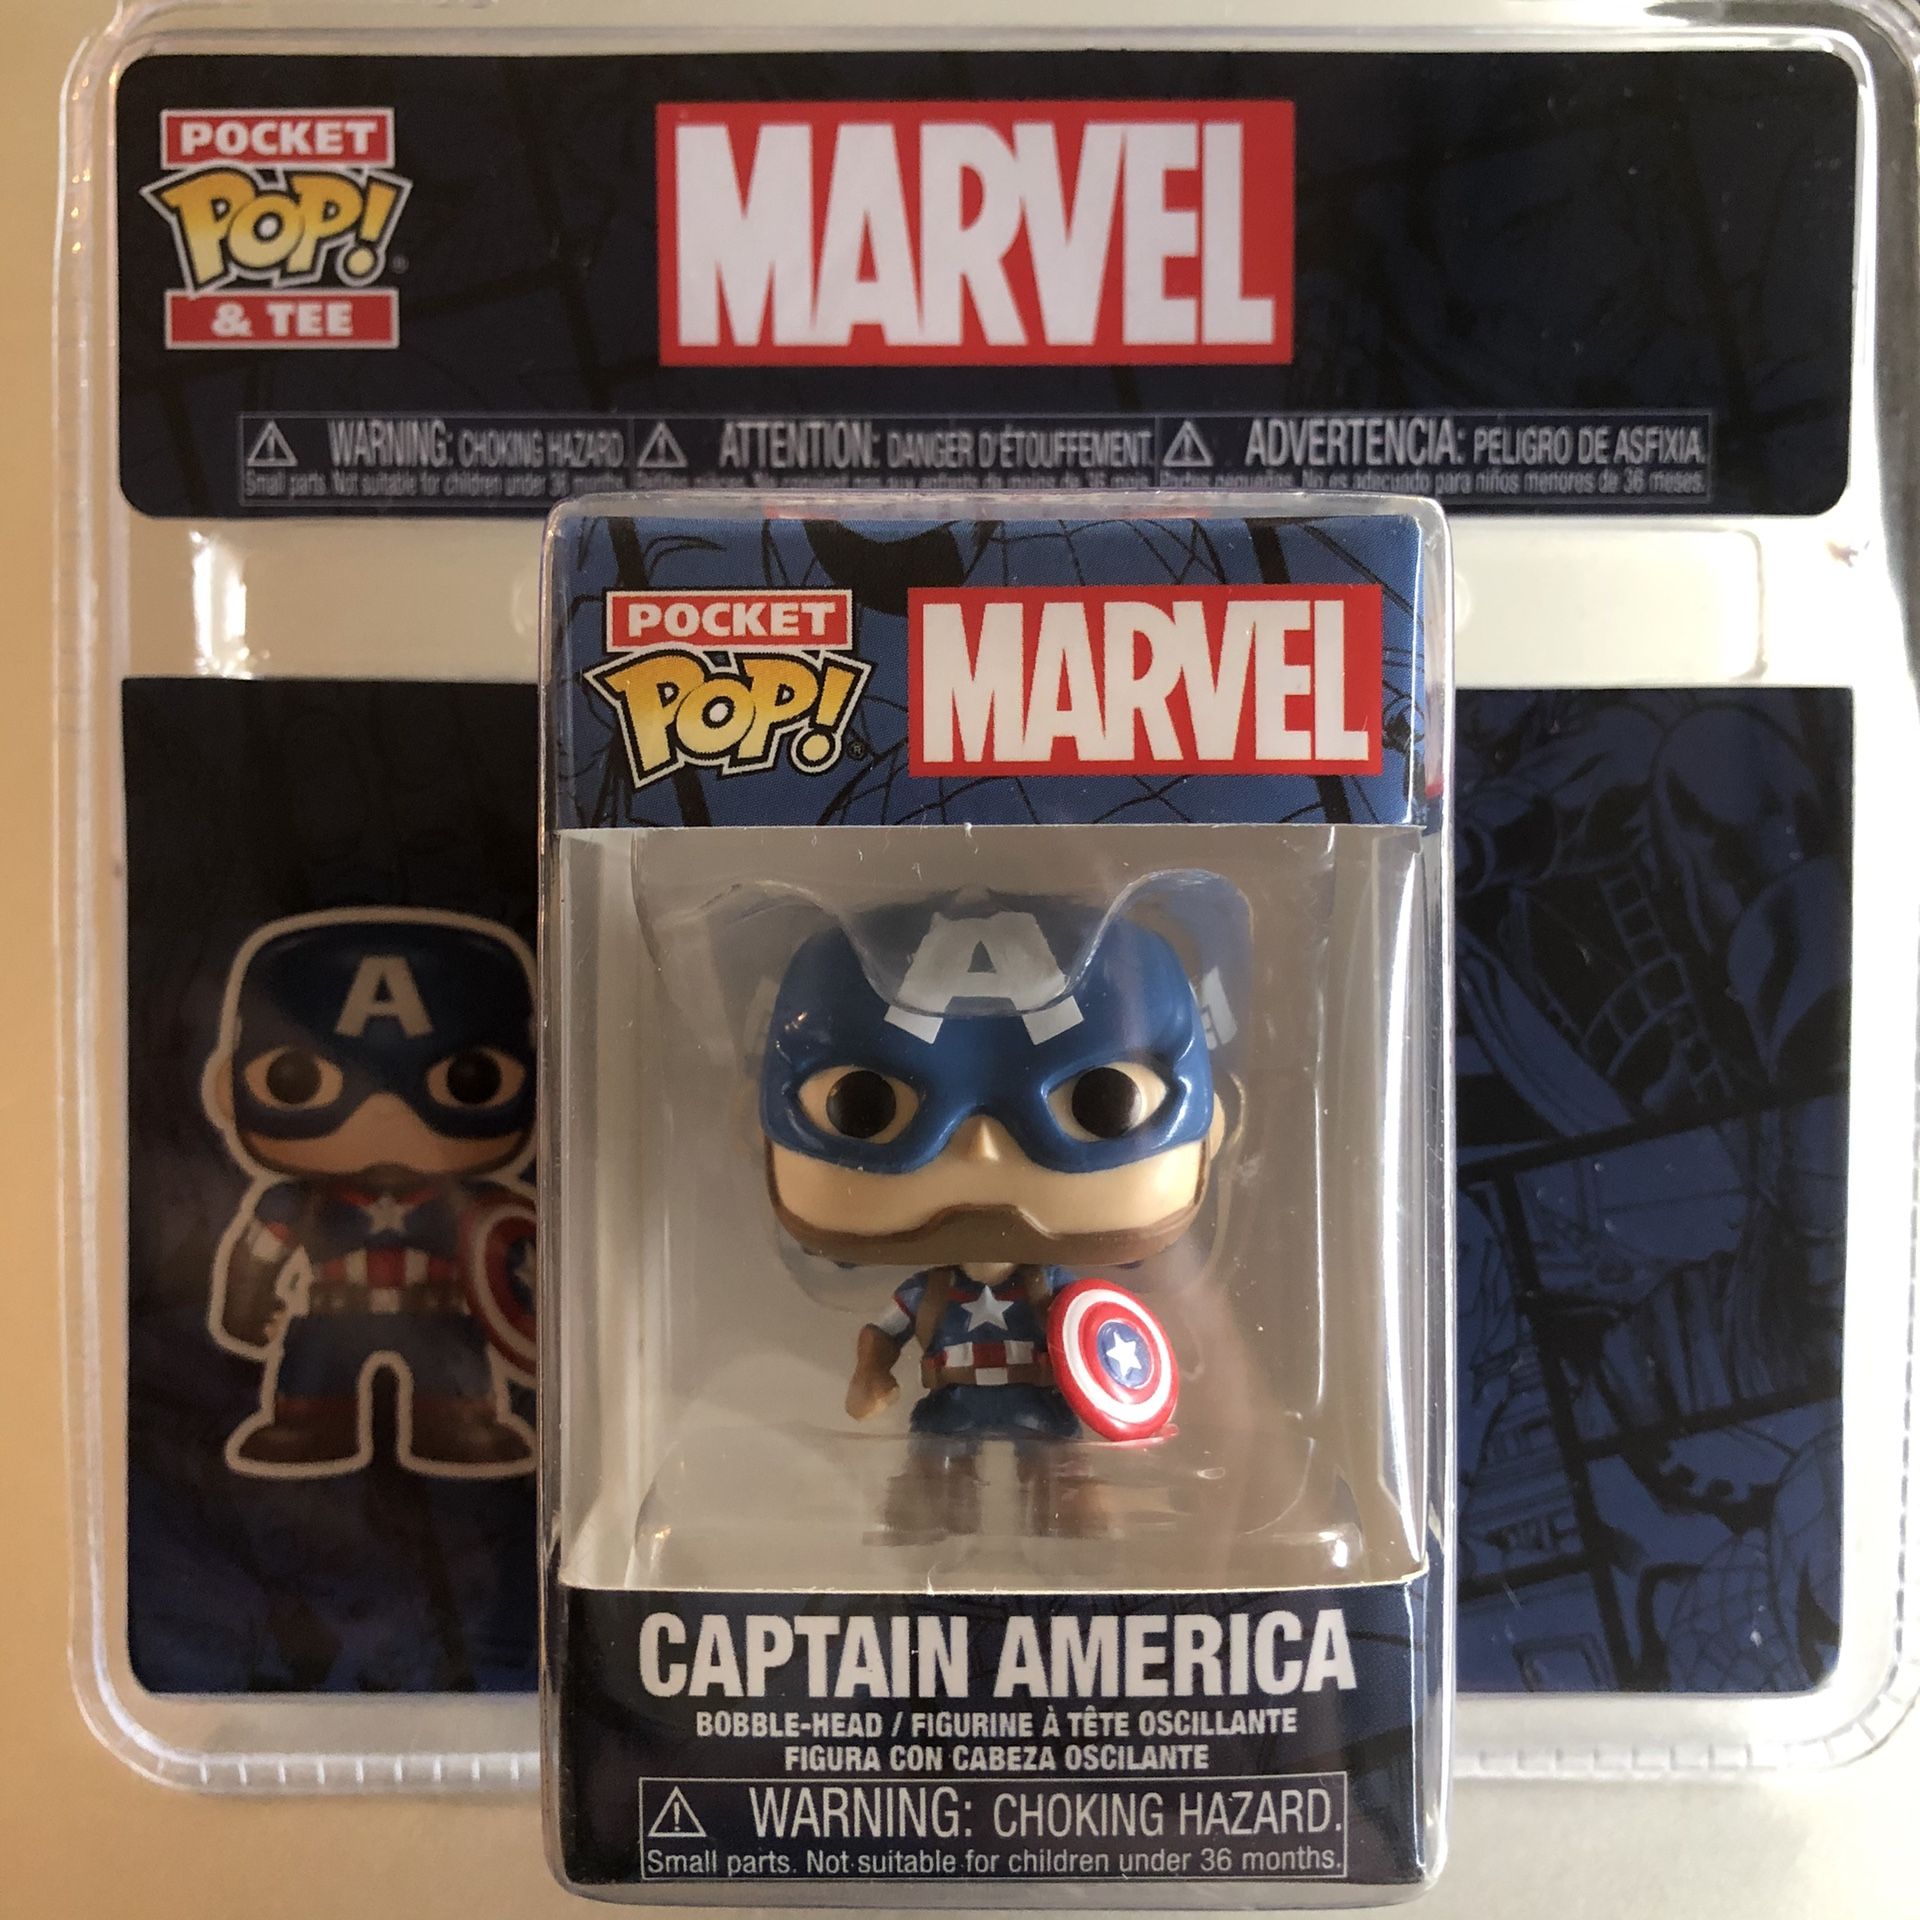 Brand new sealed never been opened mini Funko Marvel Captain America pocket POP Christmas stocking stuffer